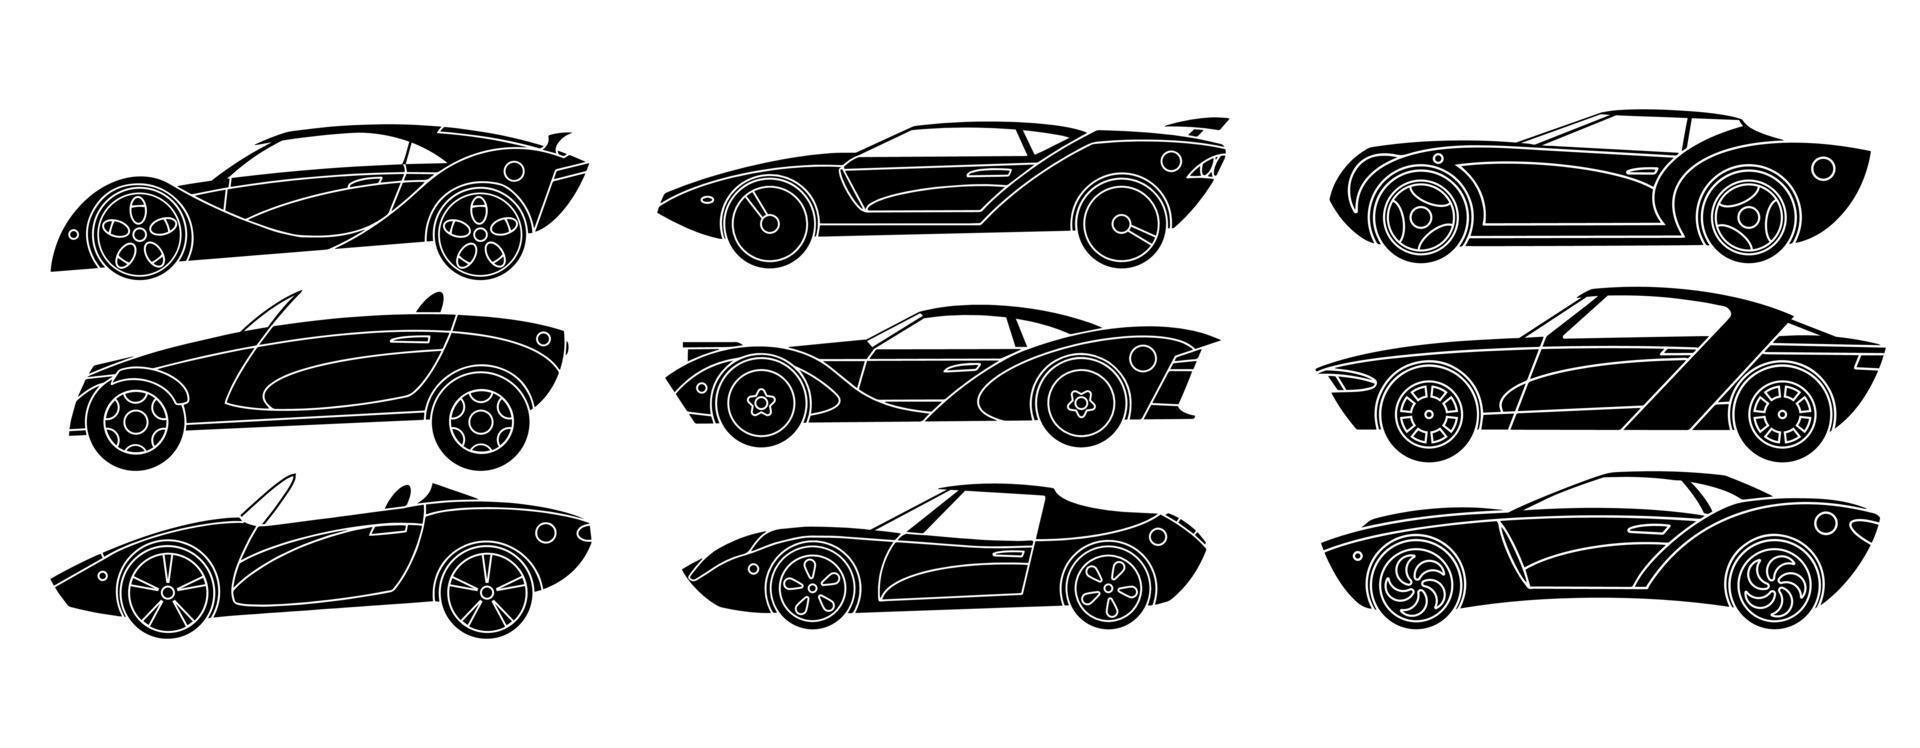 uppsättning av svart silhuetter av sporter bilar. vektor illustration.